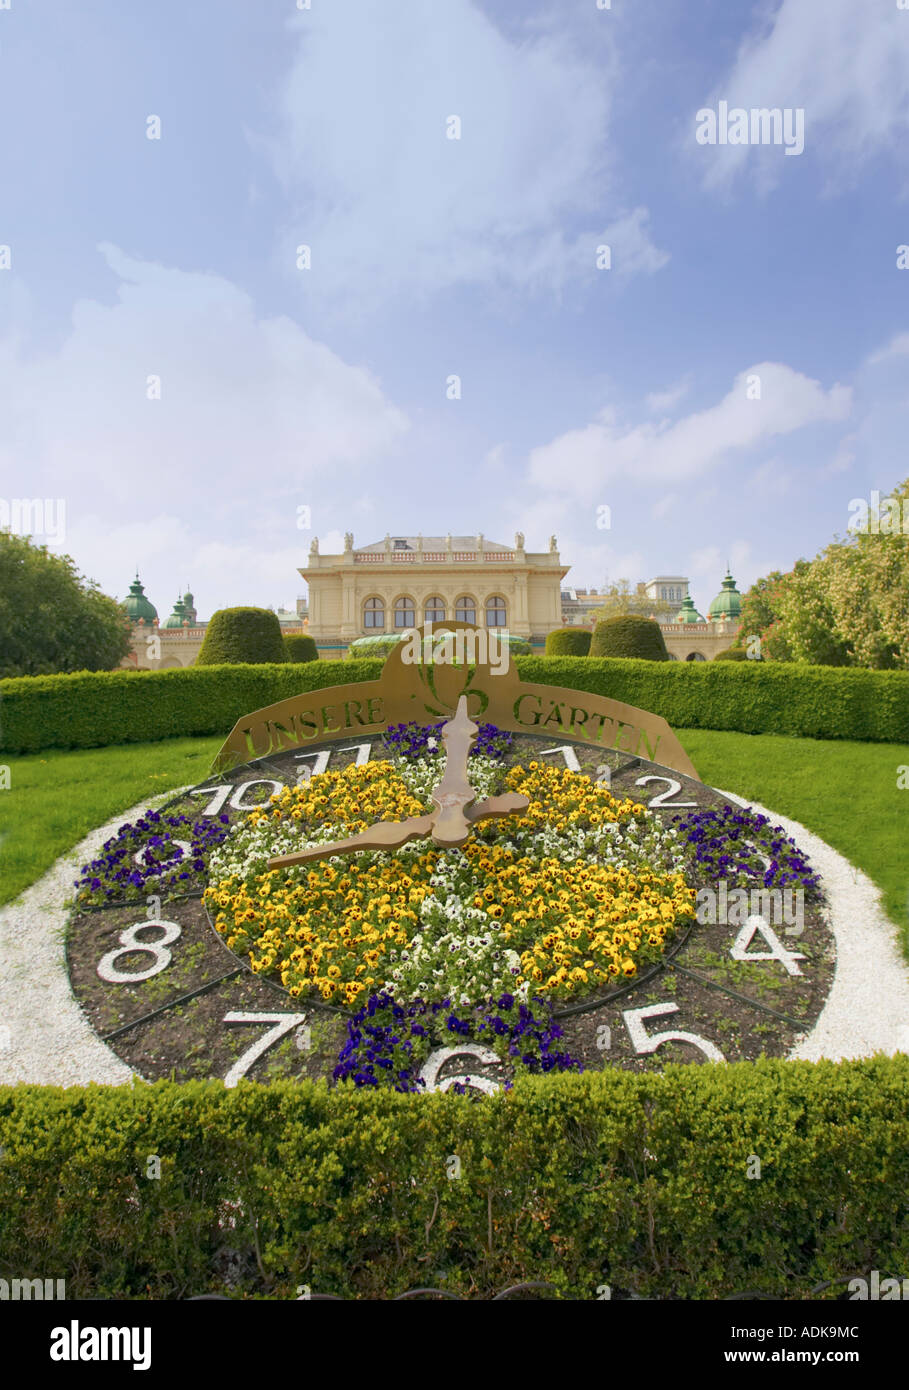 The Unsere Gärten with kursalon Stadtpark in Vienna, Austria Stock Photo